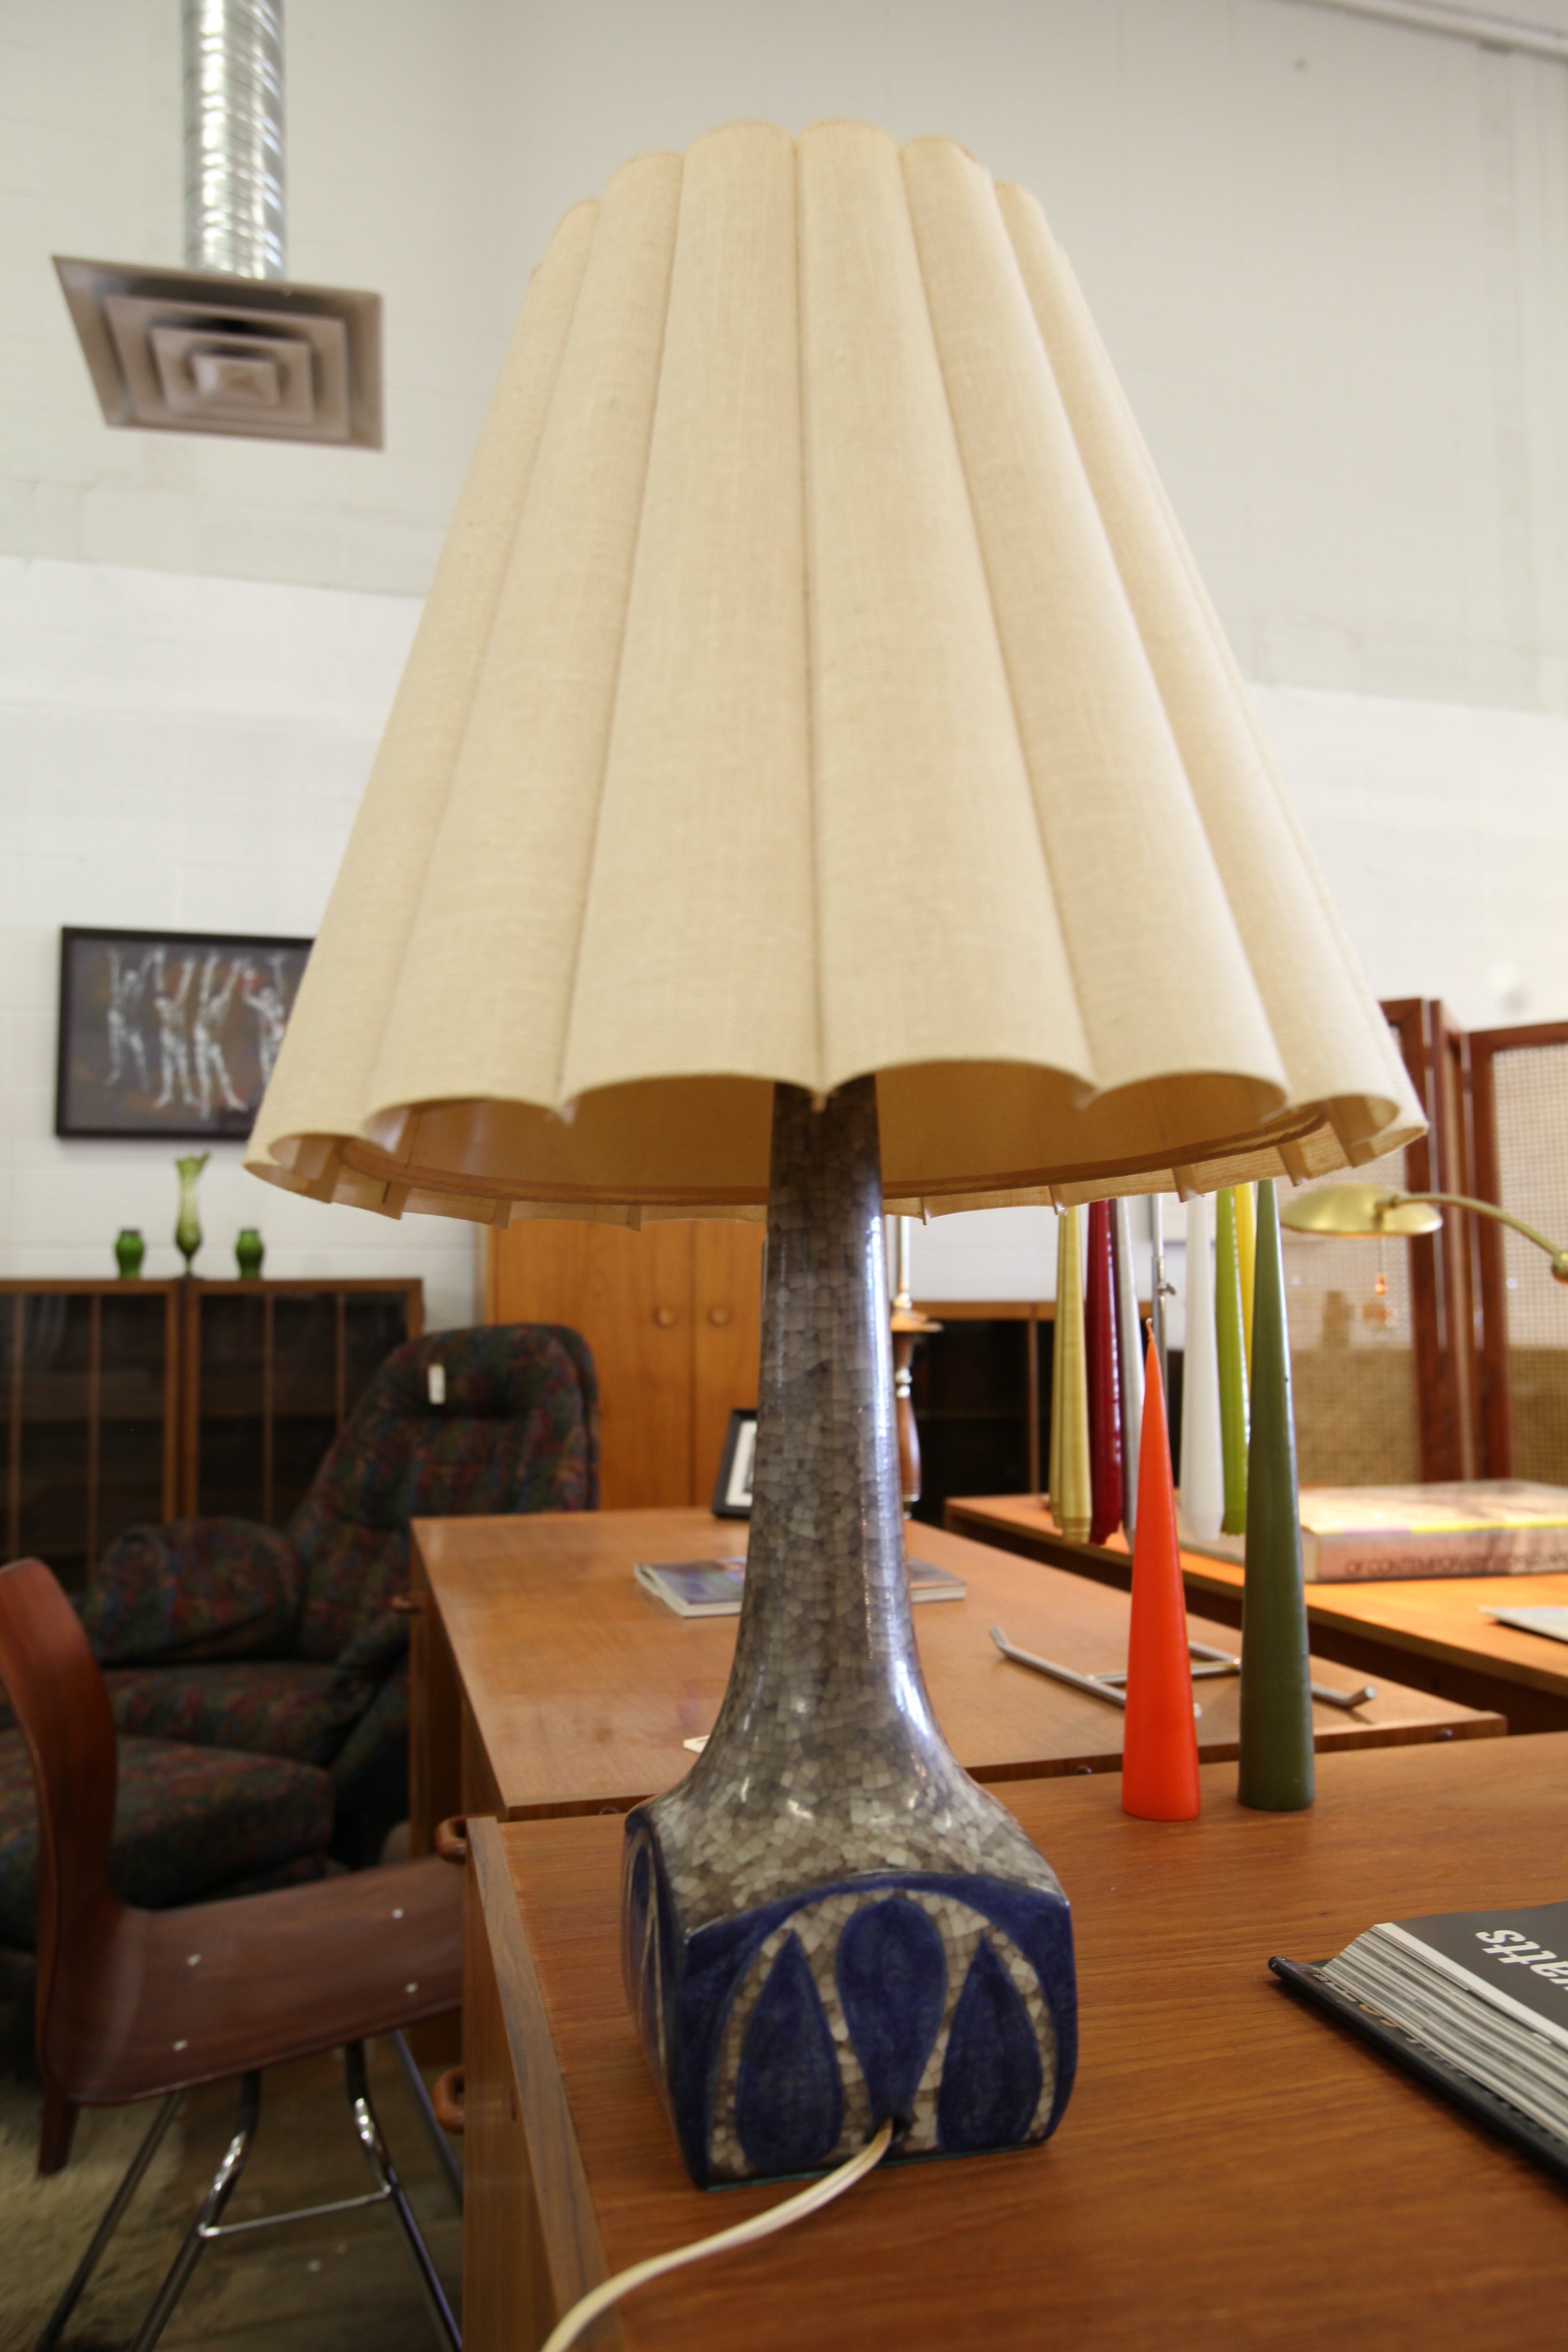 Unique Vintage Table Lamp (27"H x 16" Dia)